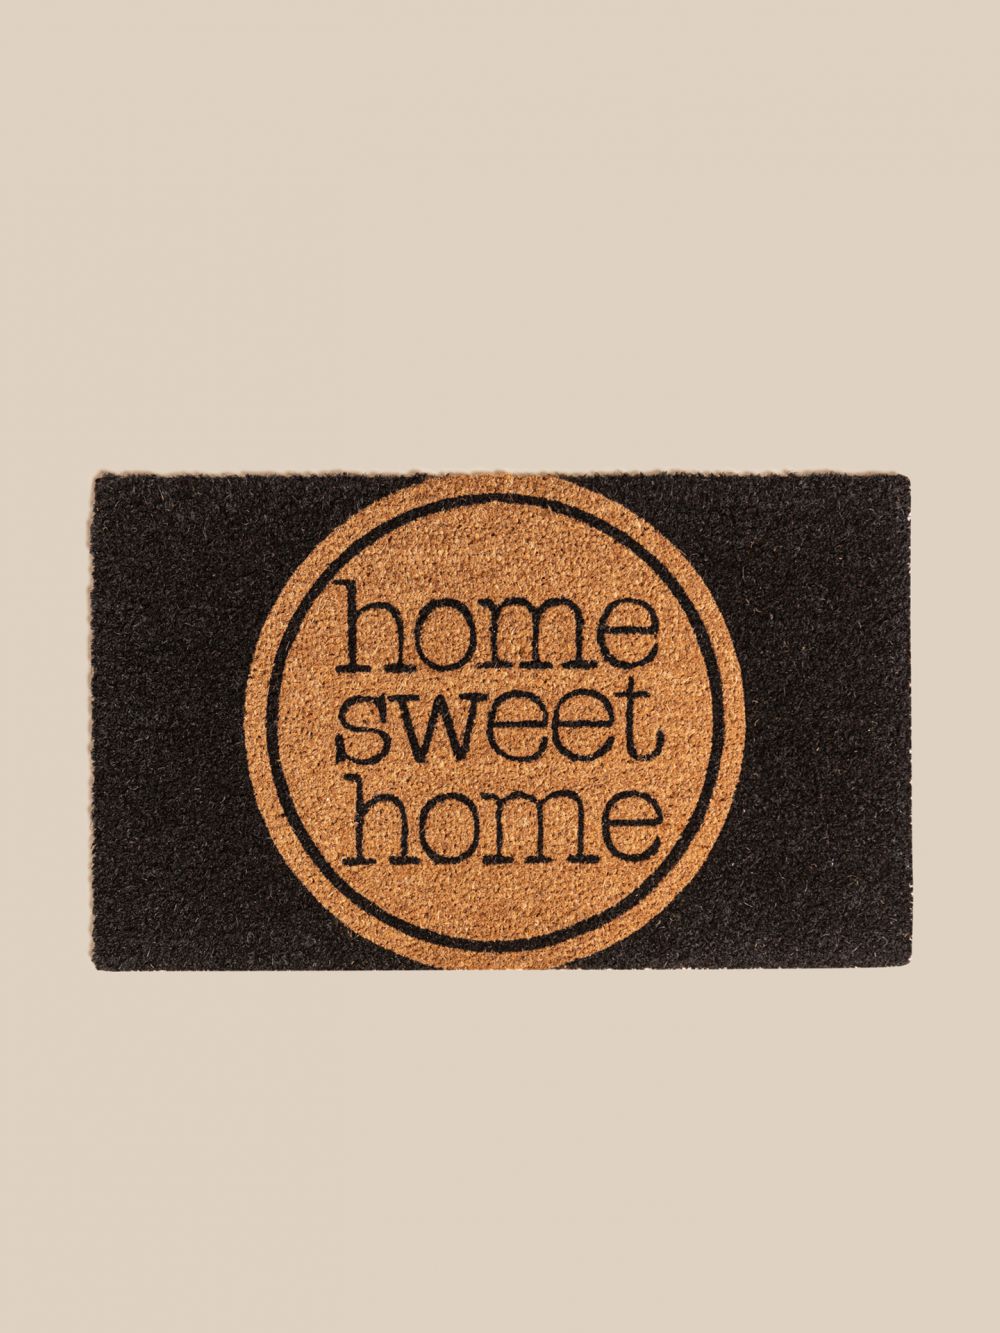 שטיח כניסה לבית home sweet home